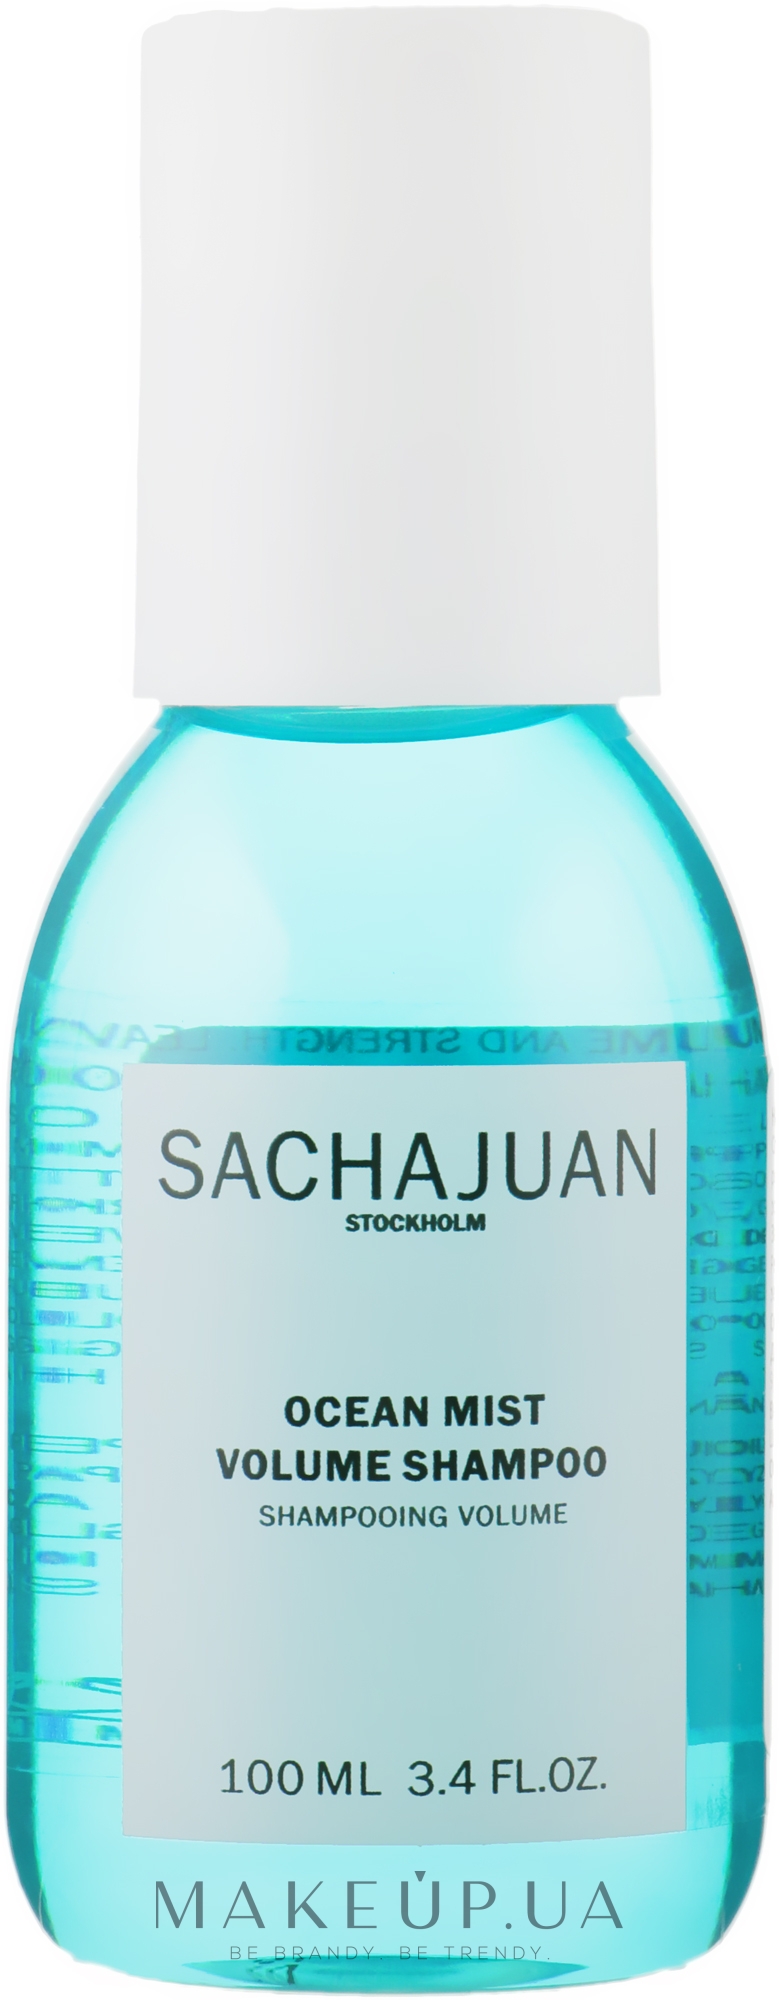 Зміцнювальний шампунь для об'єму і щільності волосся - Sachajuan Ocean Mist Volume Shampoo — фото 100ml